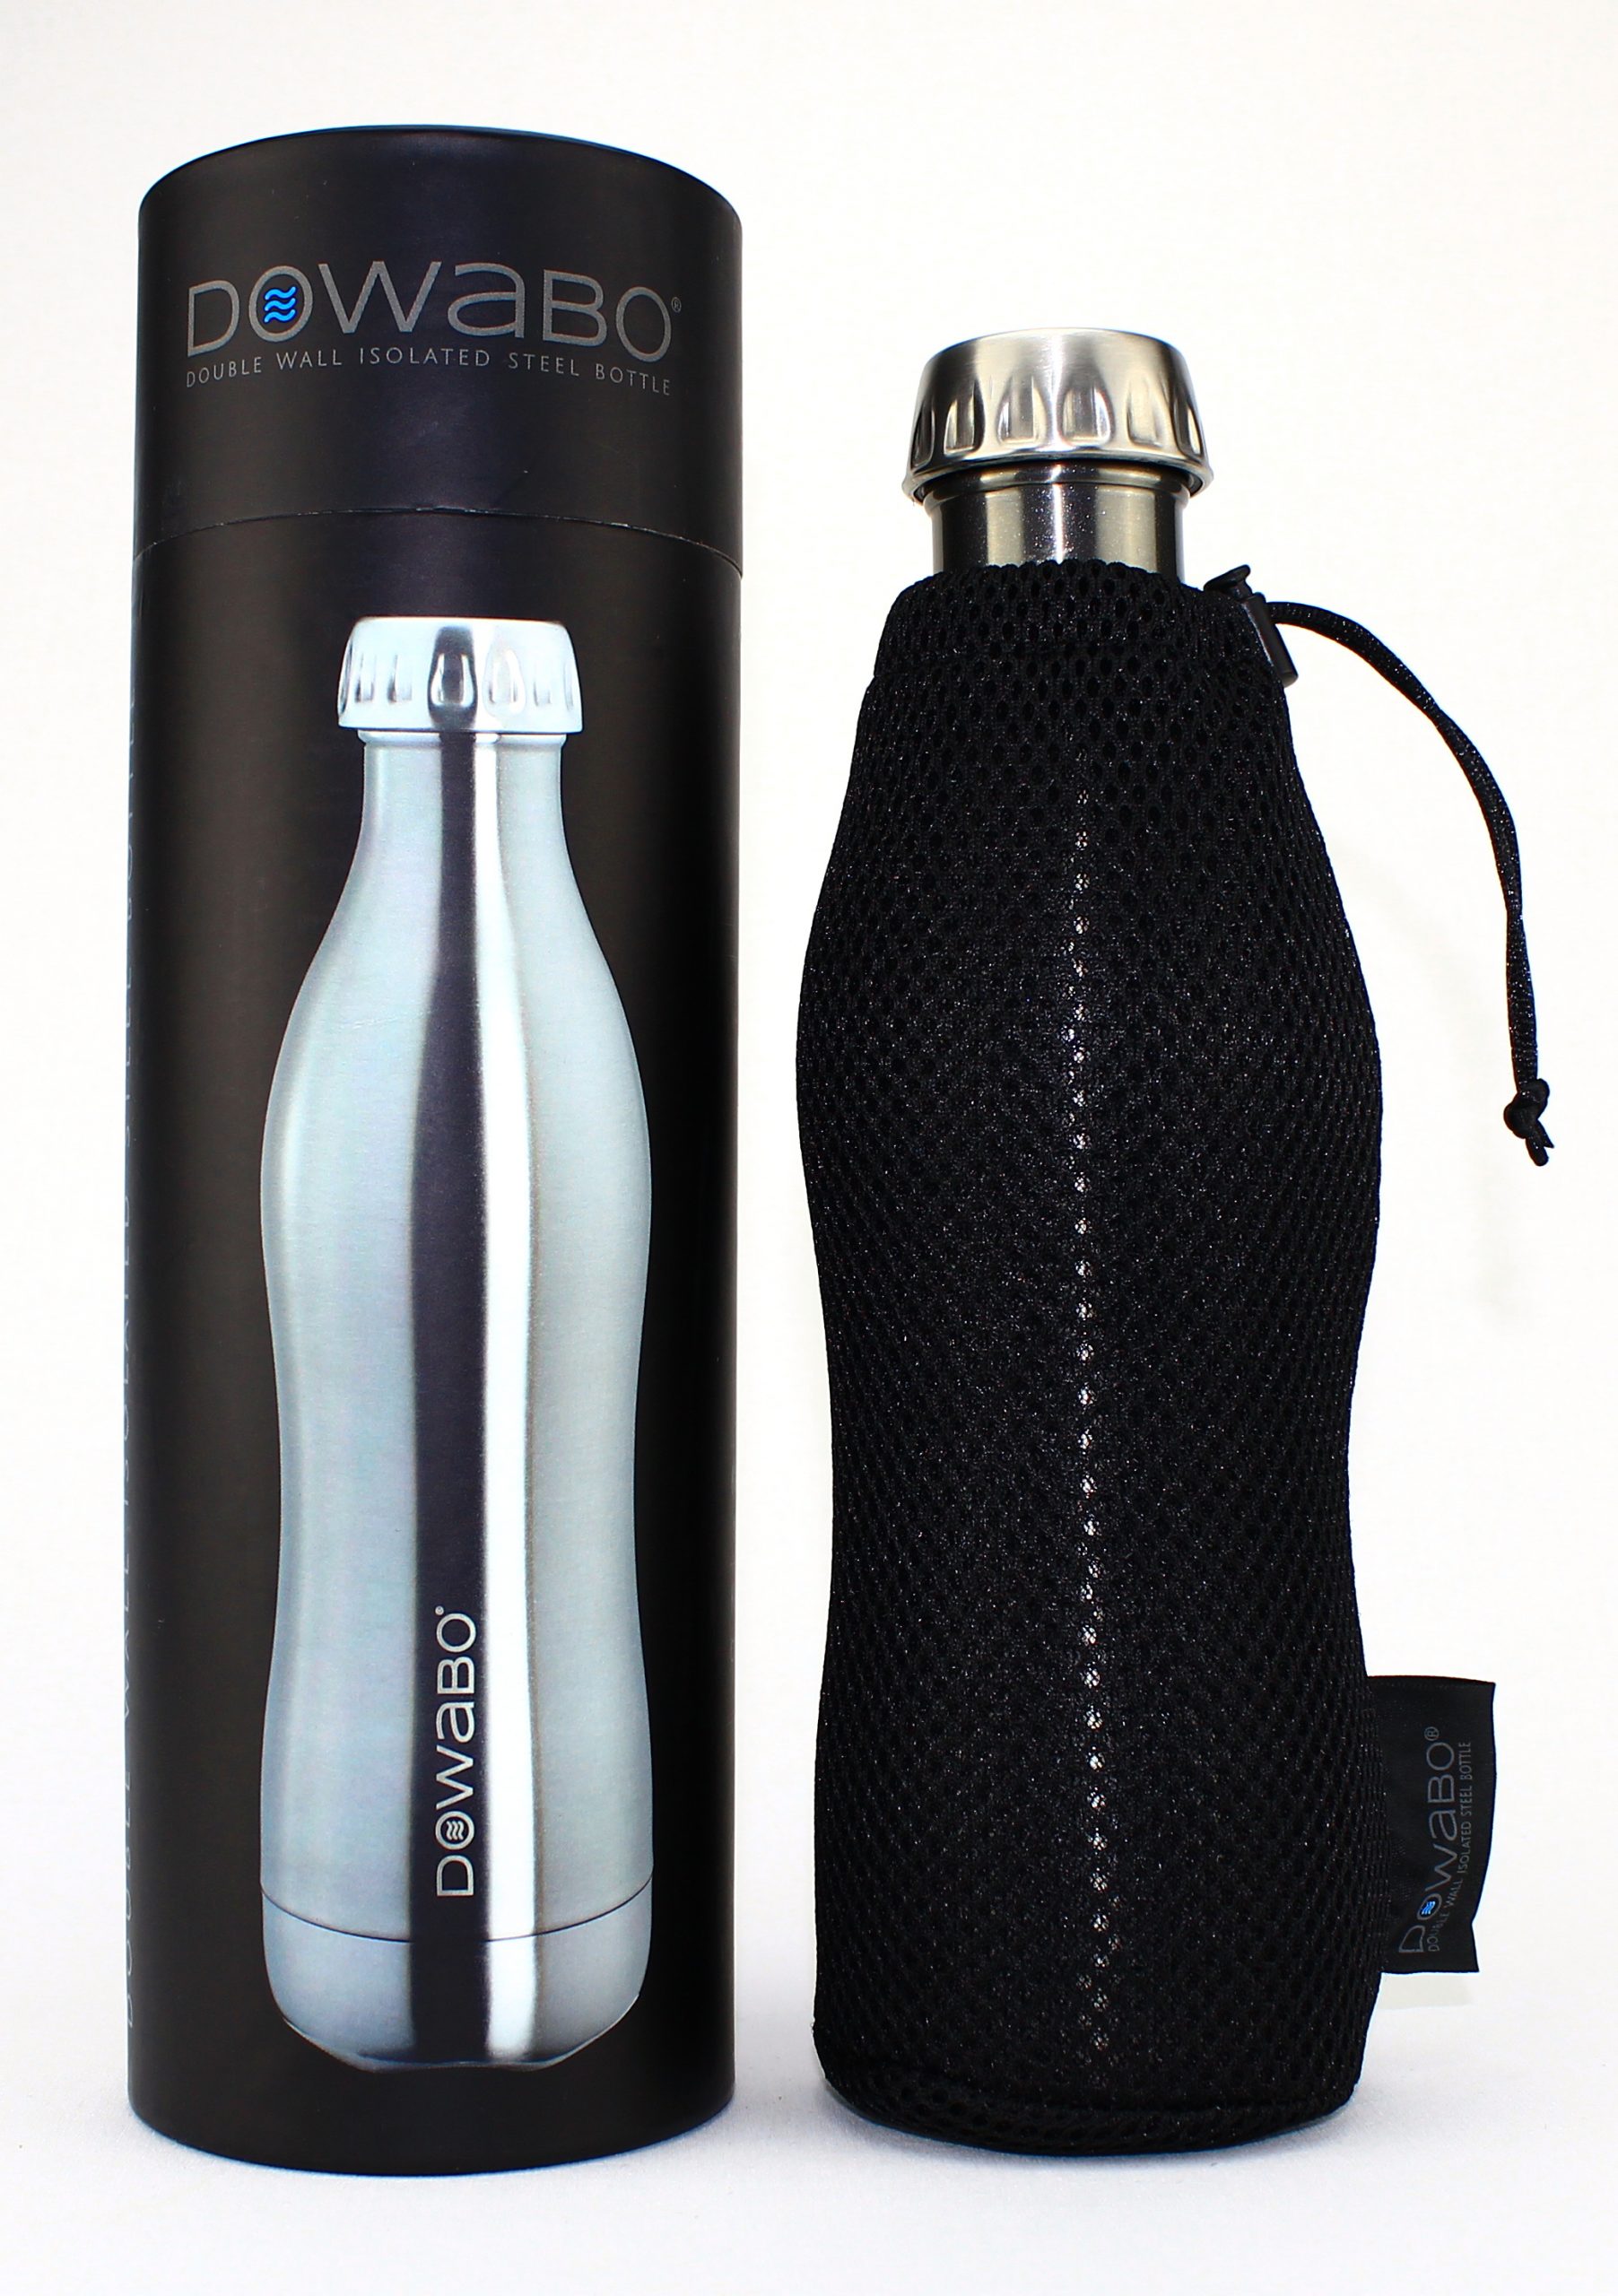 DOWABO Isolier-Stahlflasche 0.5 Liter silber